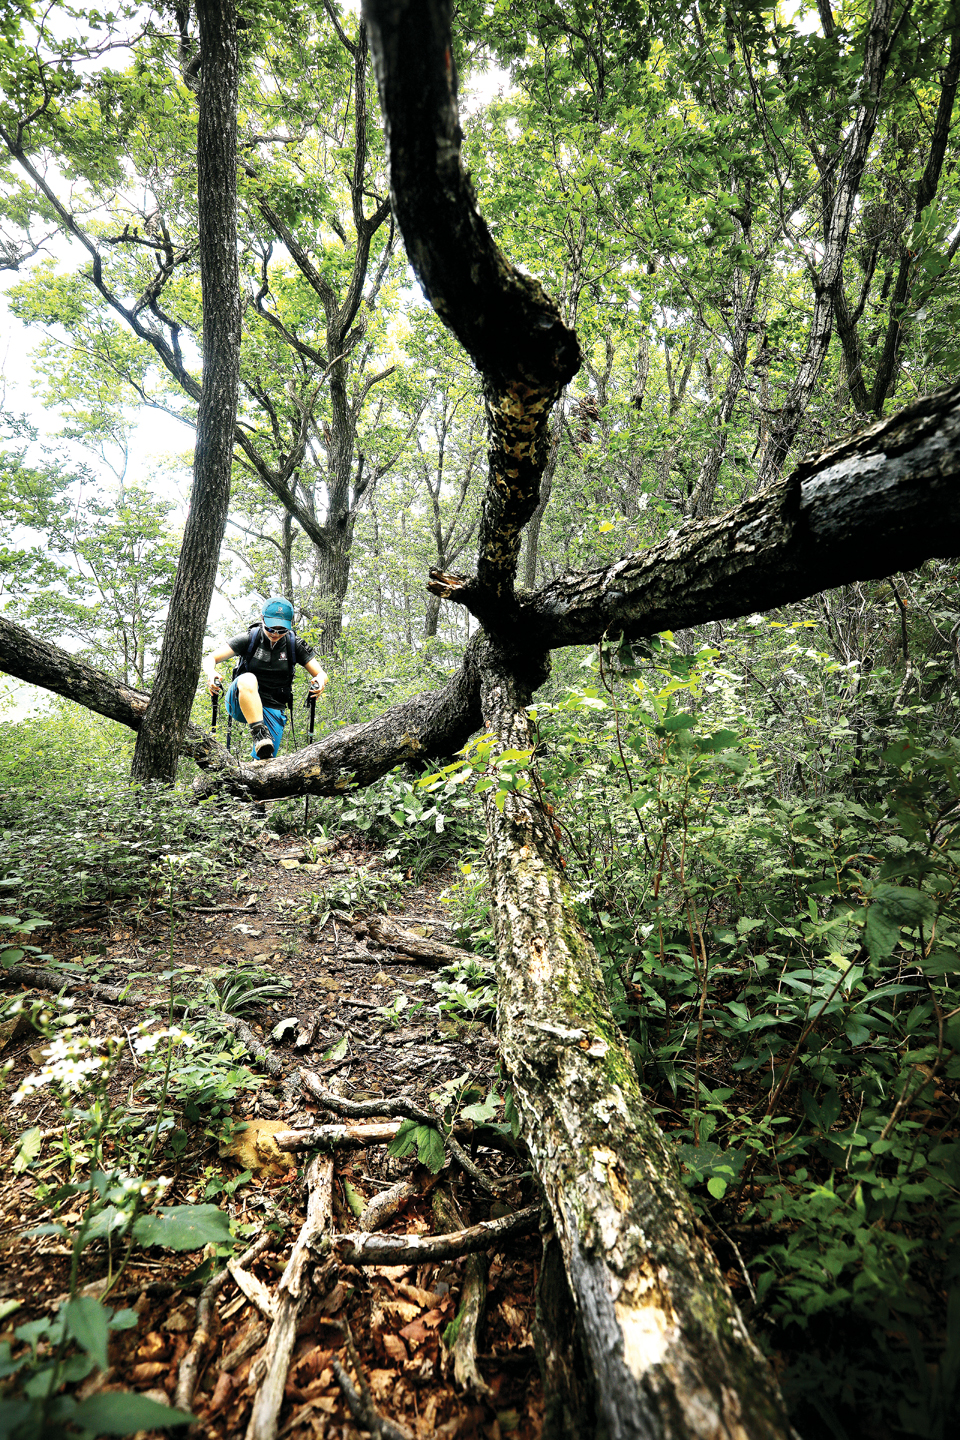 자연미 넘치는 숲길을 걷는 블랙야크 권태도·김찬일 셰르파. 권태도씨는 71세로 전체 셰르파 중에 맏형이지만, 아일랜드피크 (6,189m)와 몽블랑(4,810m)을 올랐으며 백두대간을 3번 종주한 집념의 산악인이다.